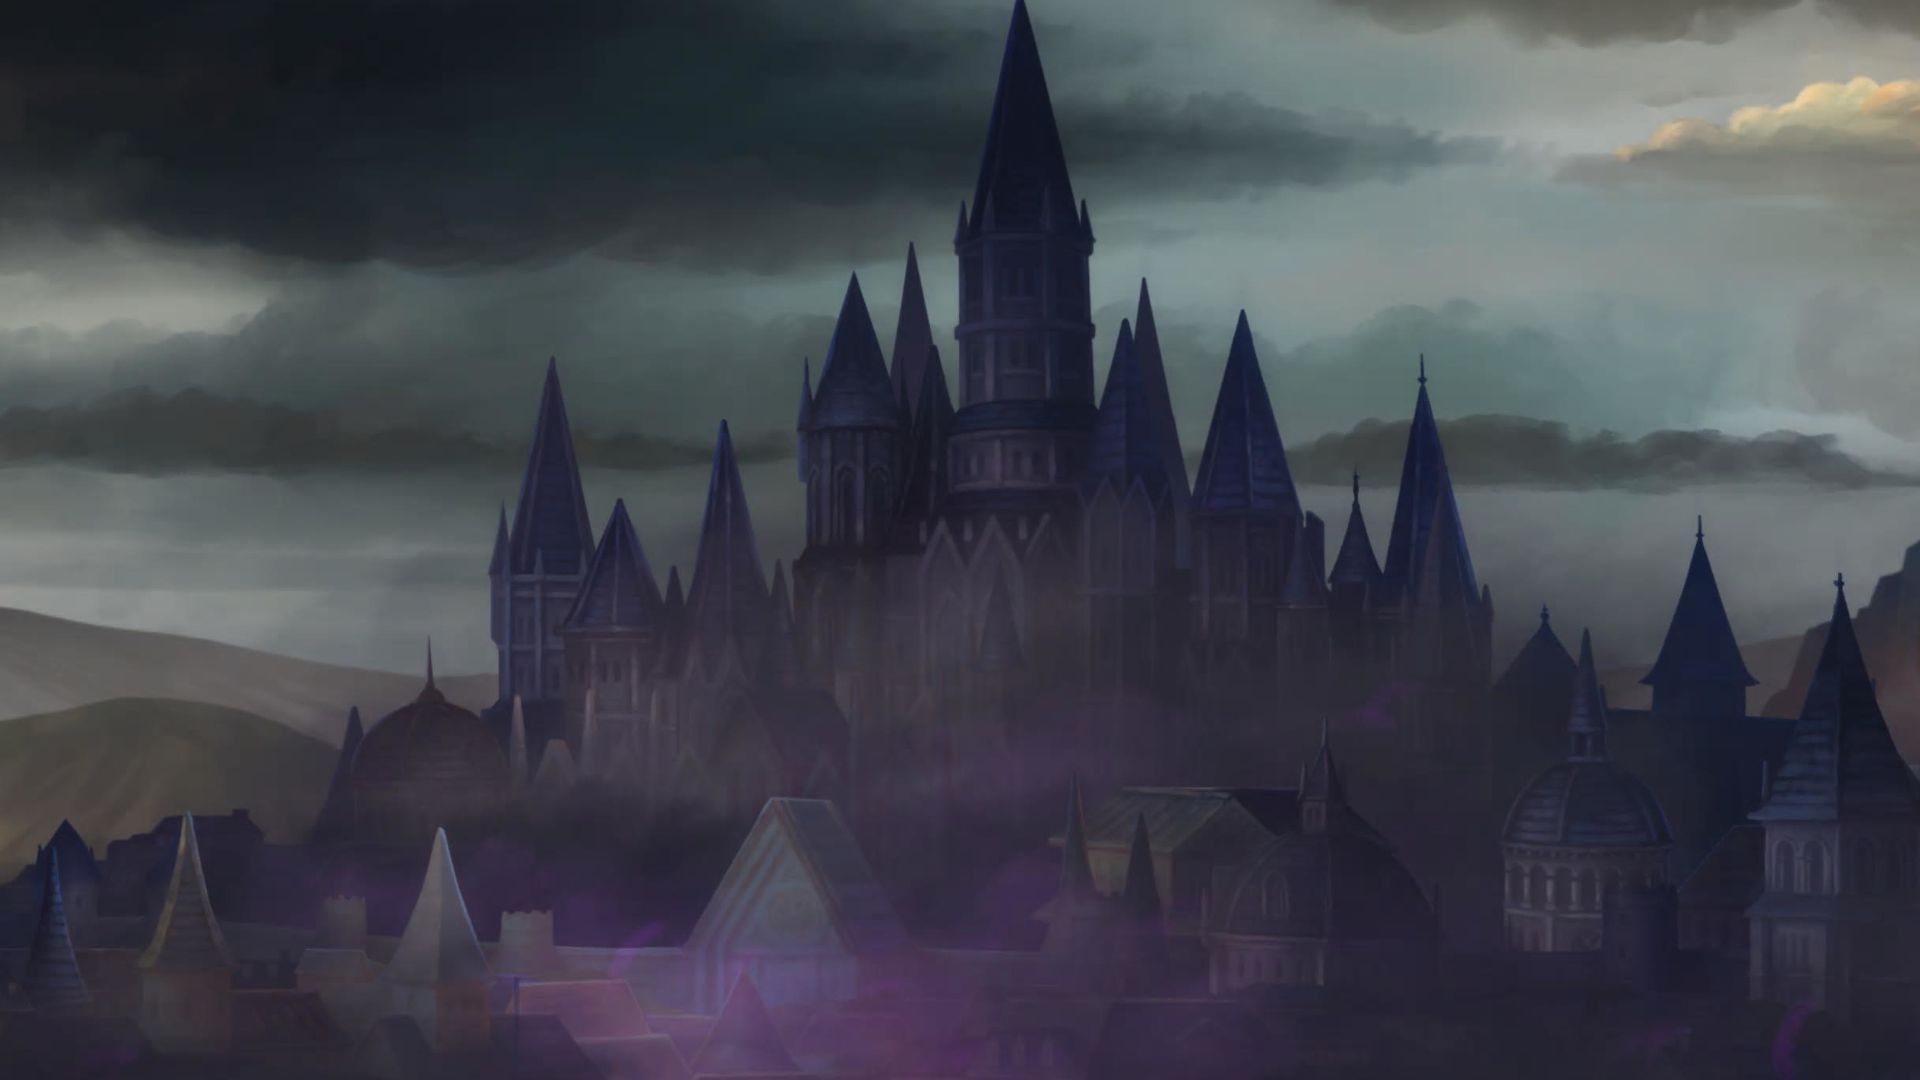 Властелин единорогов, столица Корнии погруженная в пурпурный туман